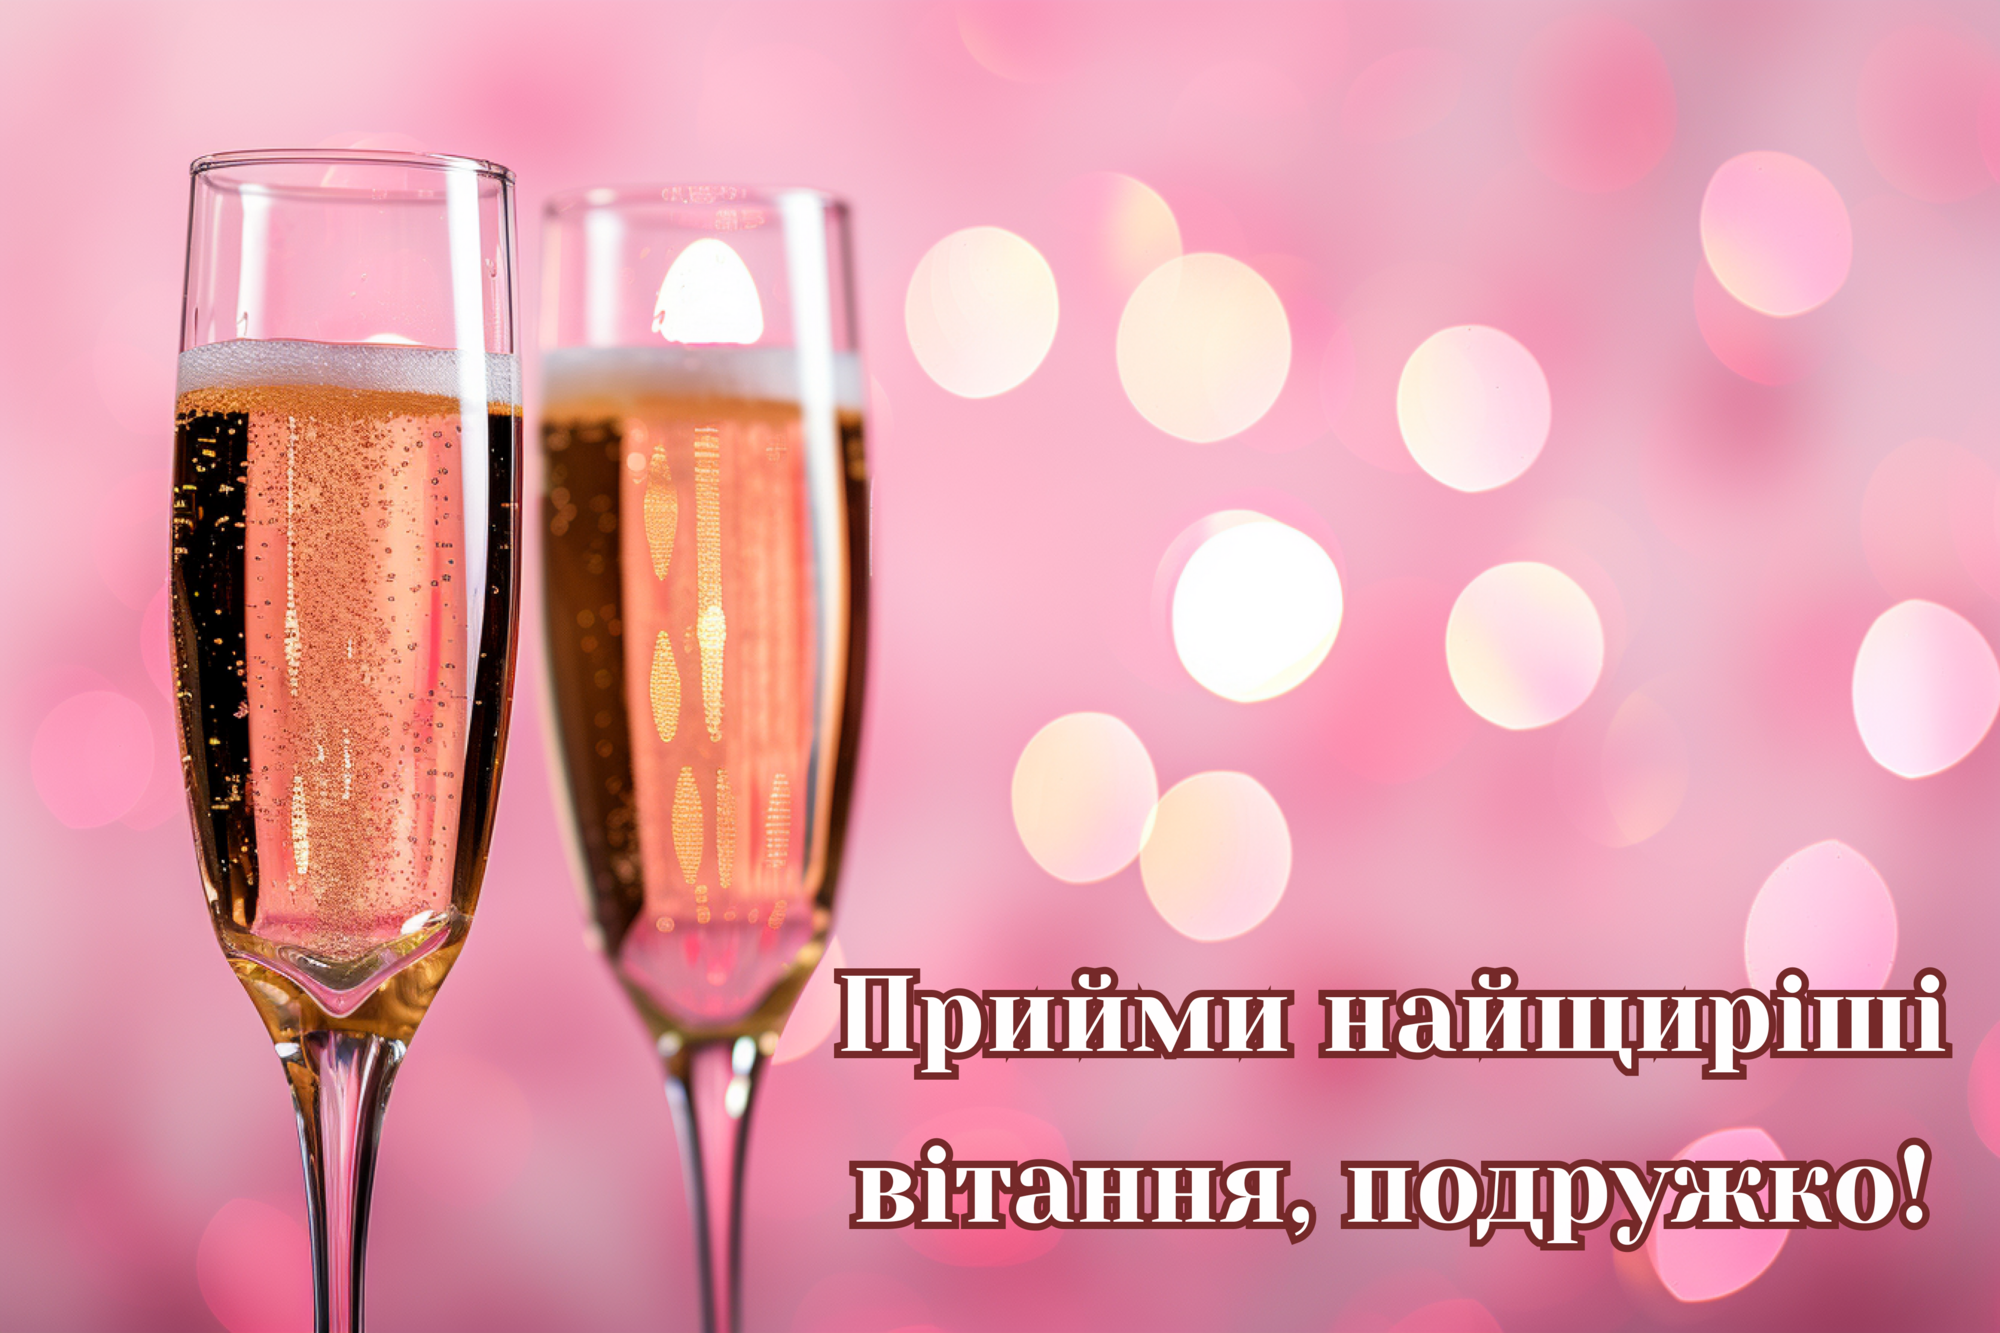 День подруги: лучшие поздравления и картинки на украинском языке